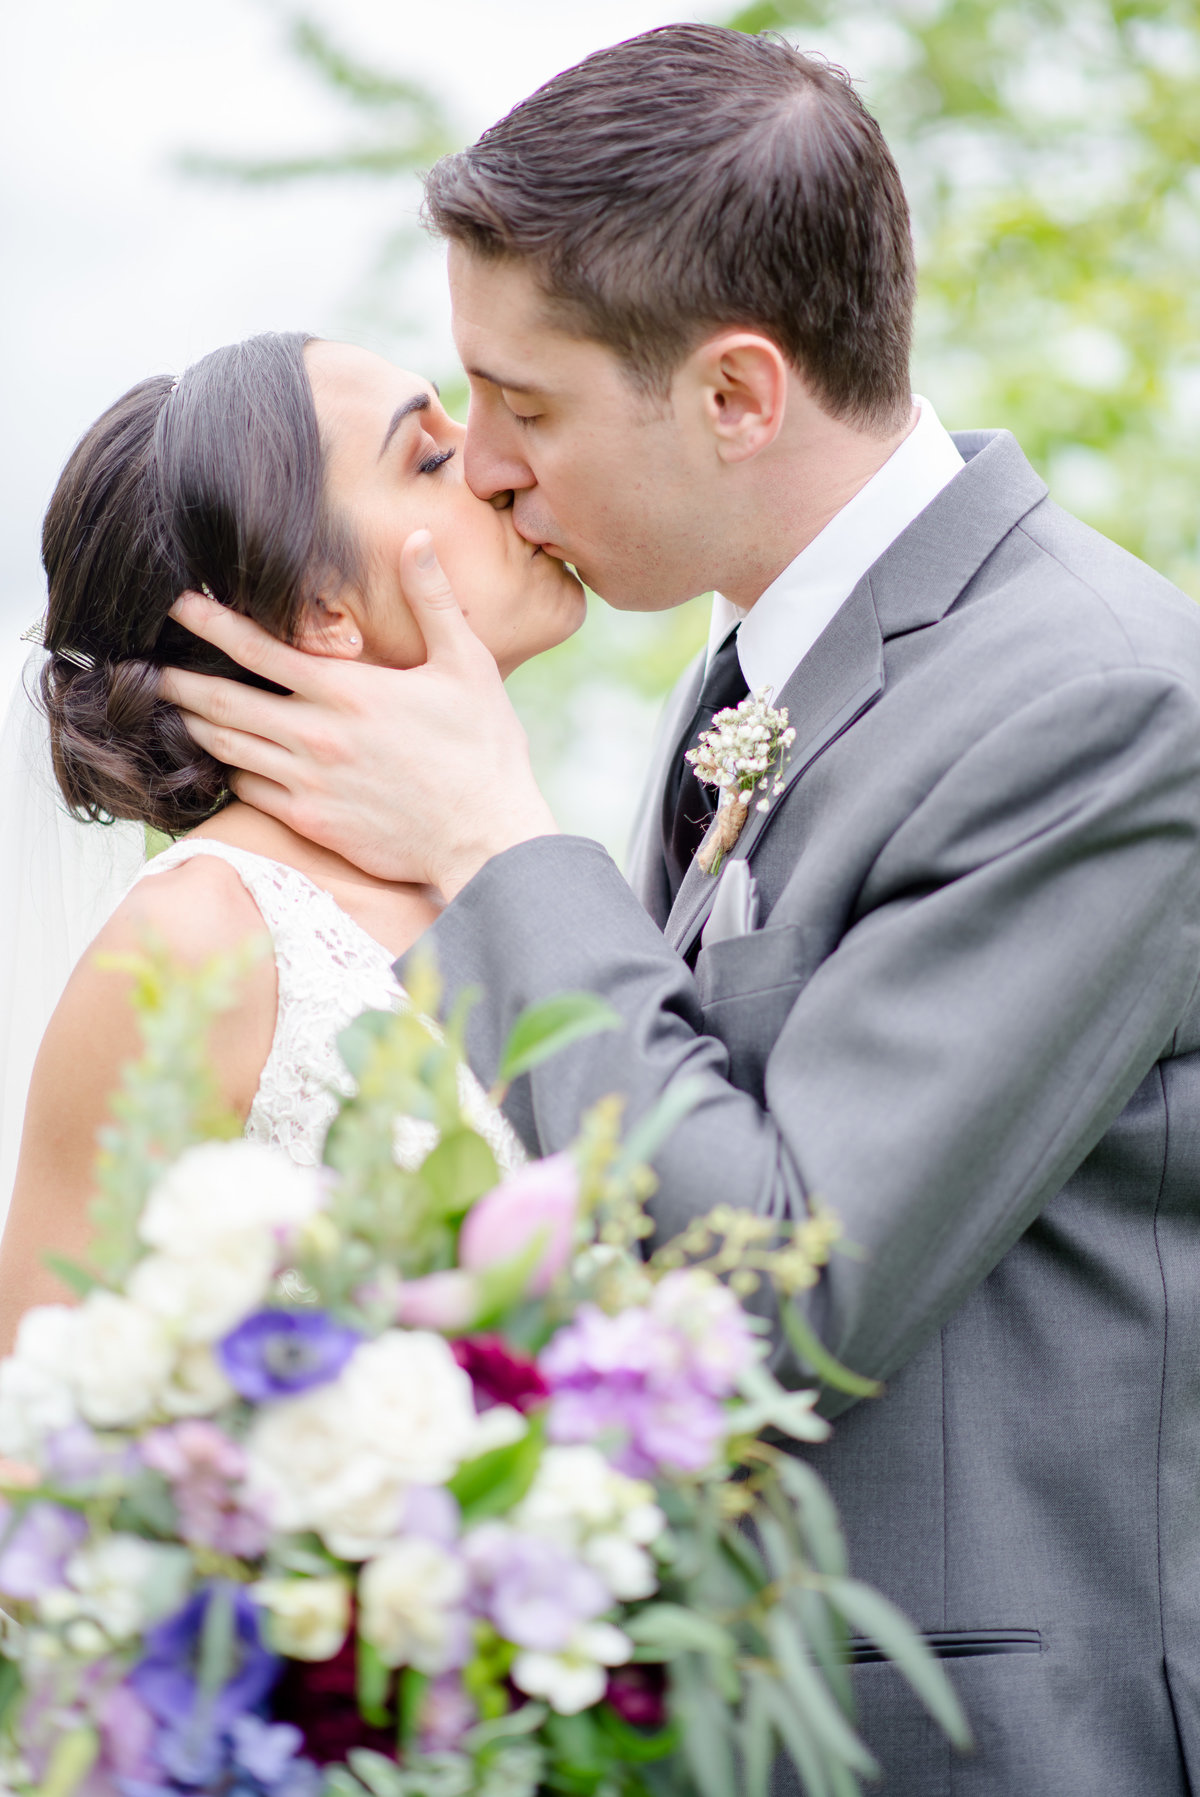 Rustic Barn Wedding Pennsylvania-Rodale Institute Wedding Raquel and Daniel Wedding 22063-22